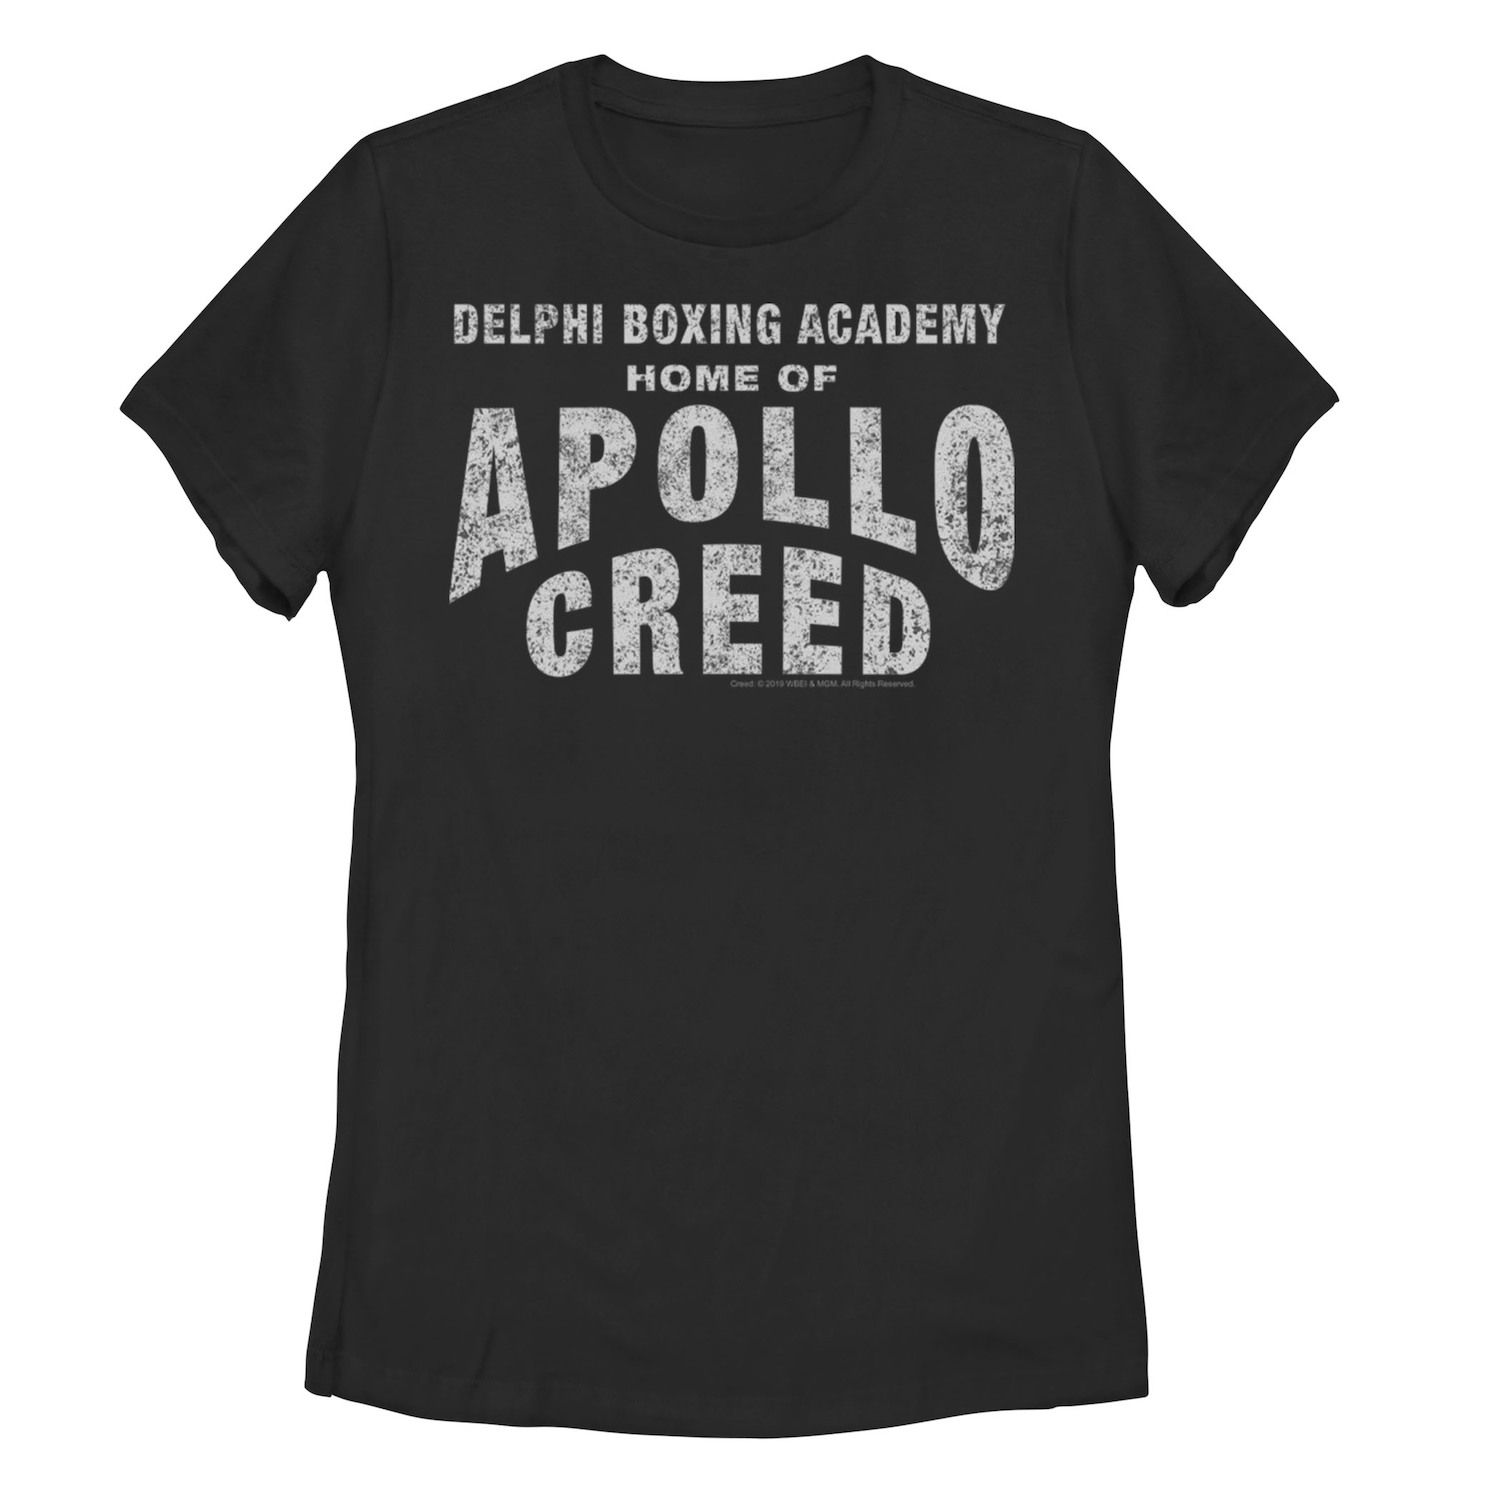 Футболка с логотипом Juniors' Creed Delphi Boxing Academy Home Of Apollo Creed Licensed Character